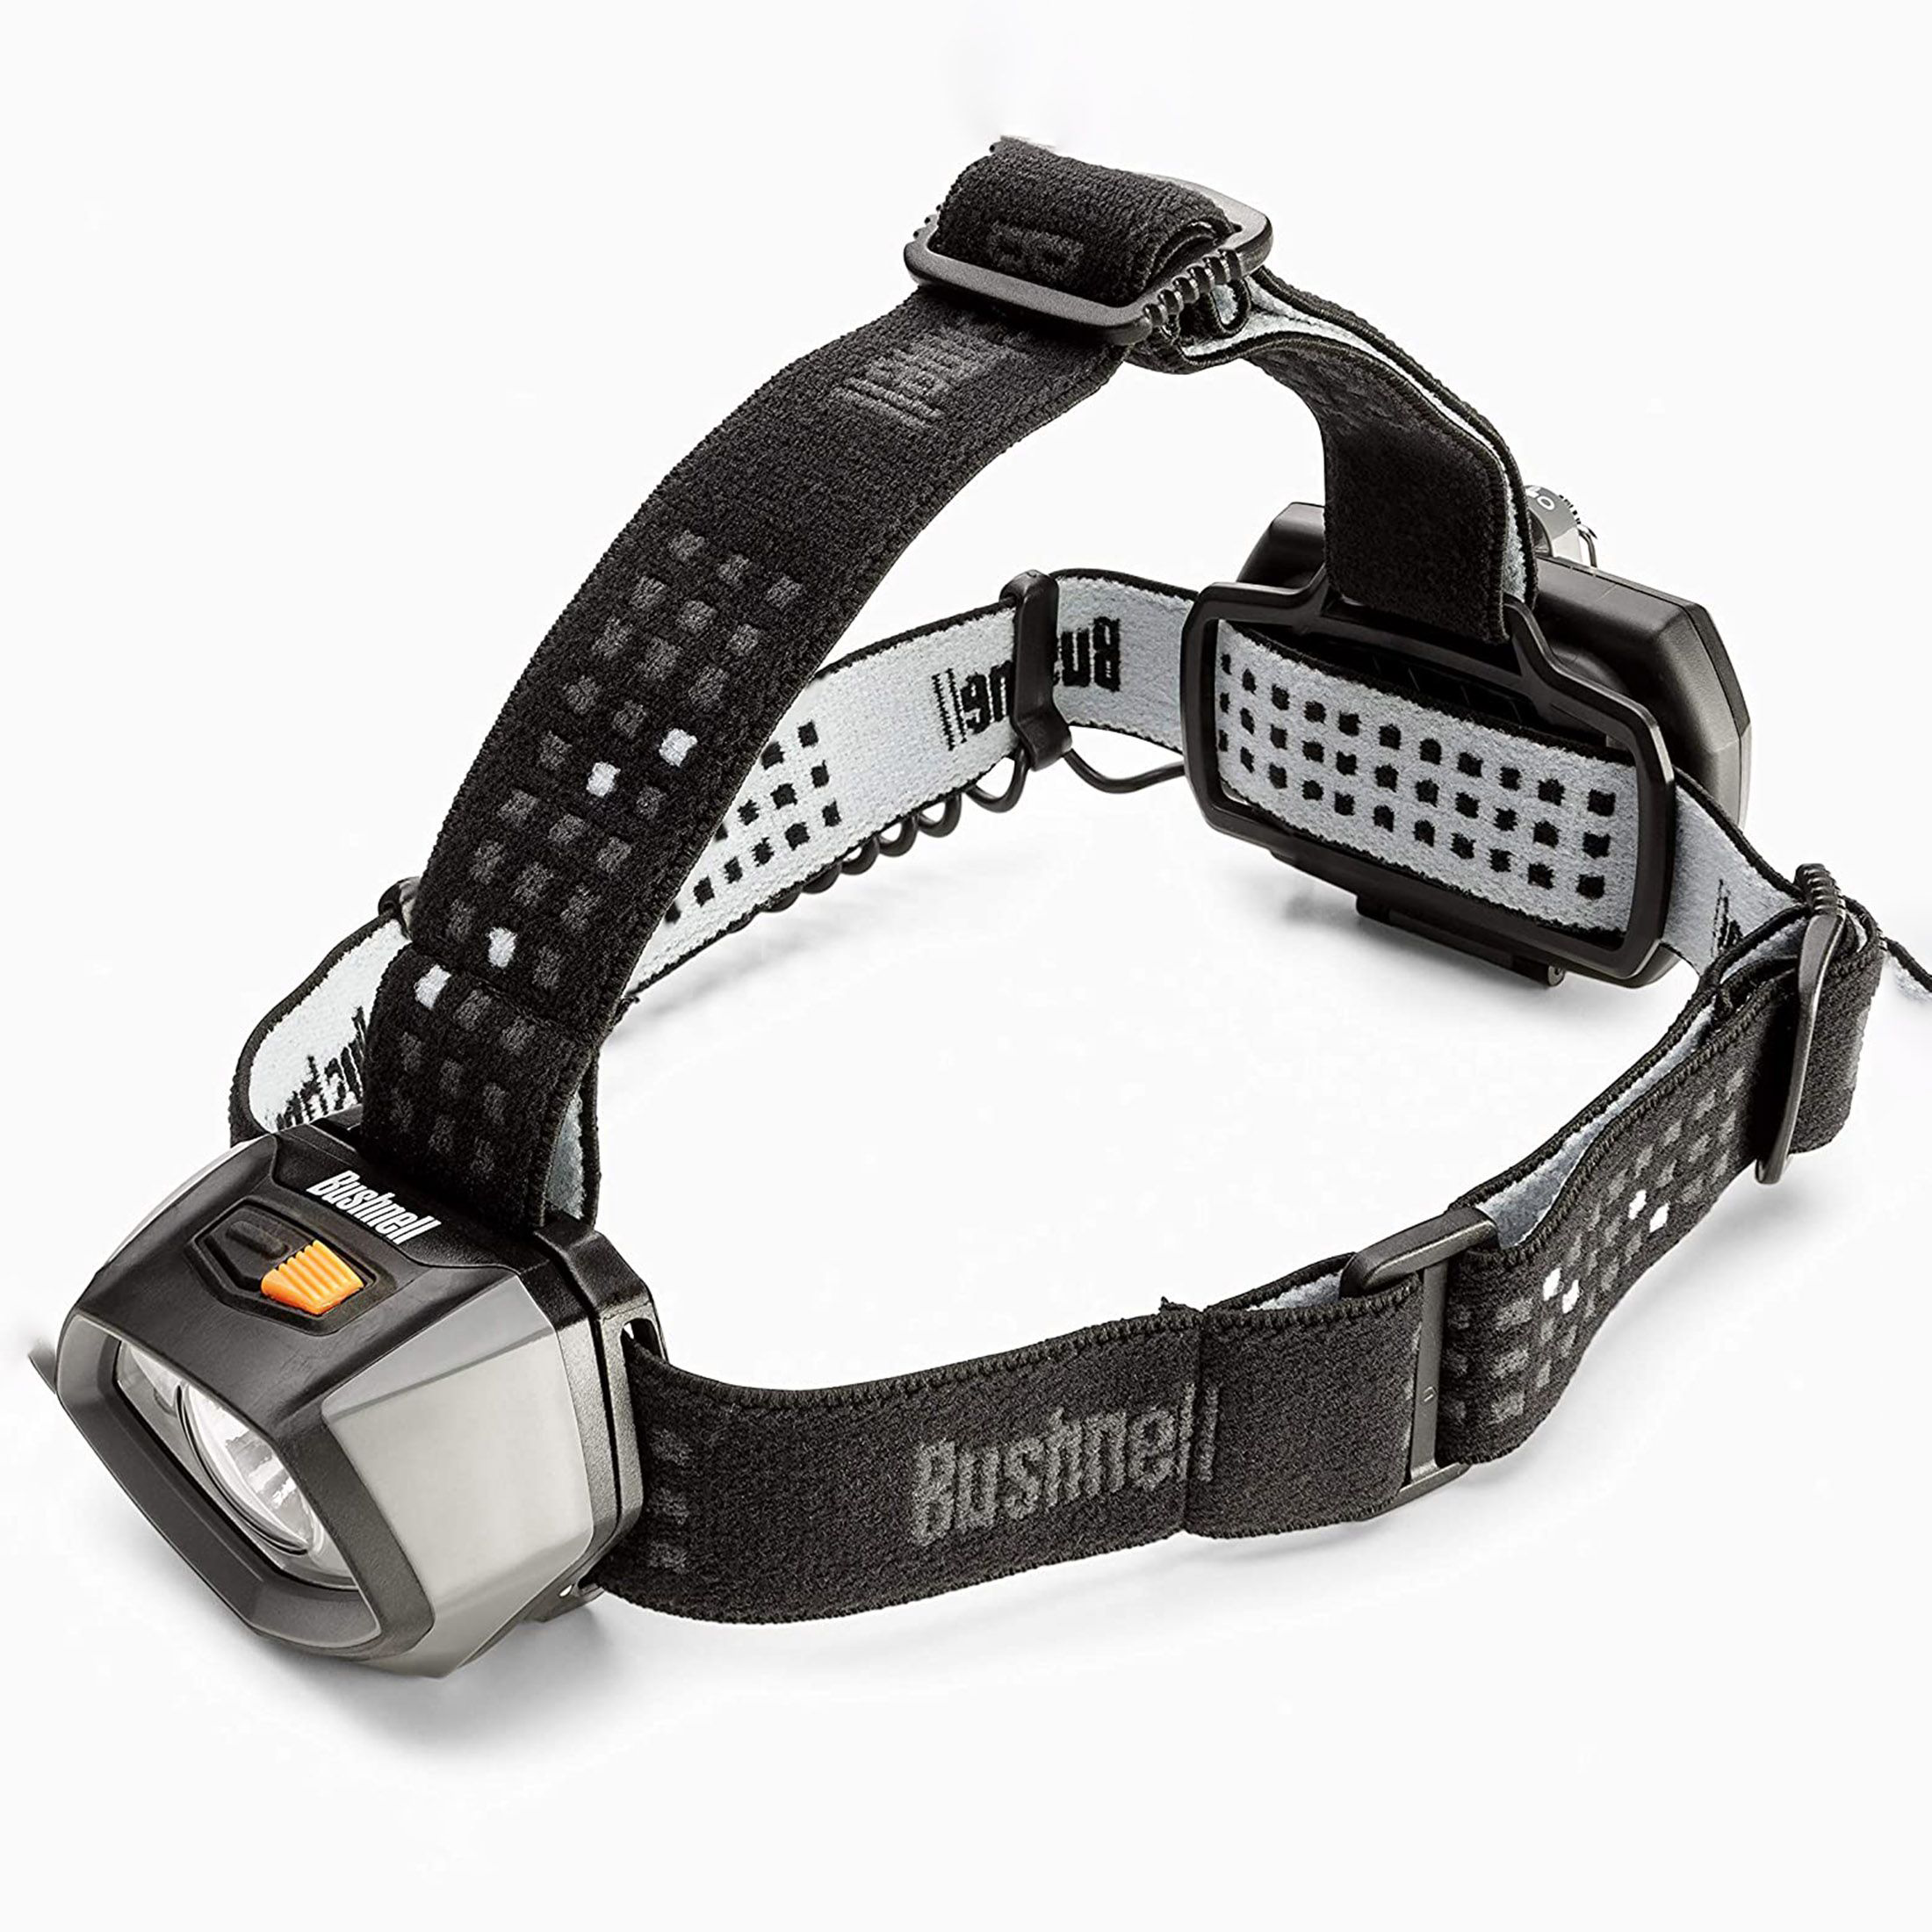 Bushnell TRKR 325 Lumen Multi-Color Headlamp